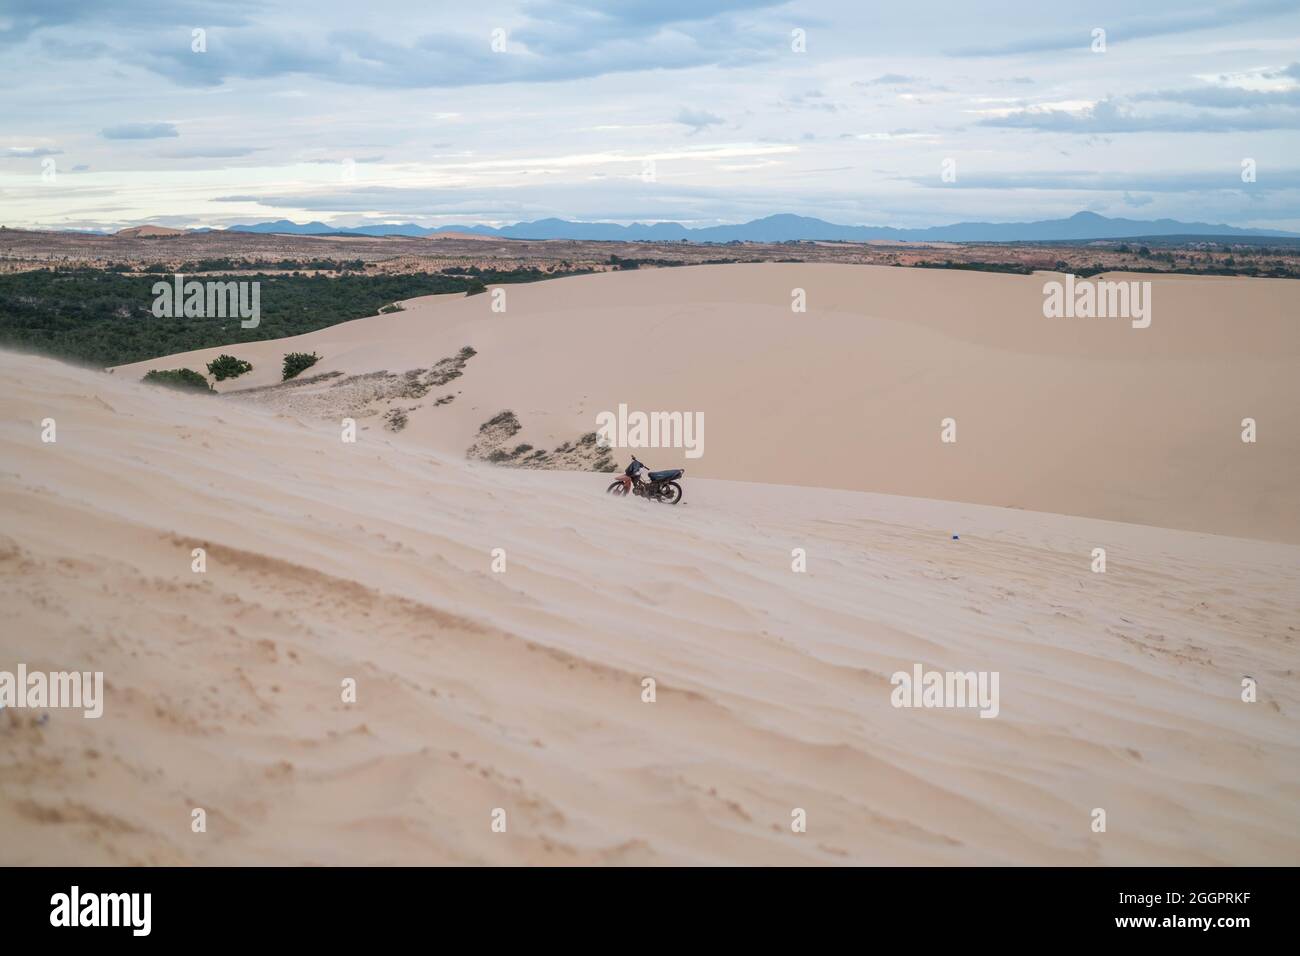 Vue pittoresque de la moto garée sur les dunes de sable dans le désert. Journée ensoleillée pendant les vacances d'été. Dunes de sable. Moto dans le désert. Banque D'Images